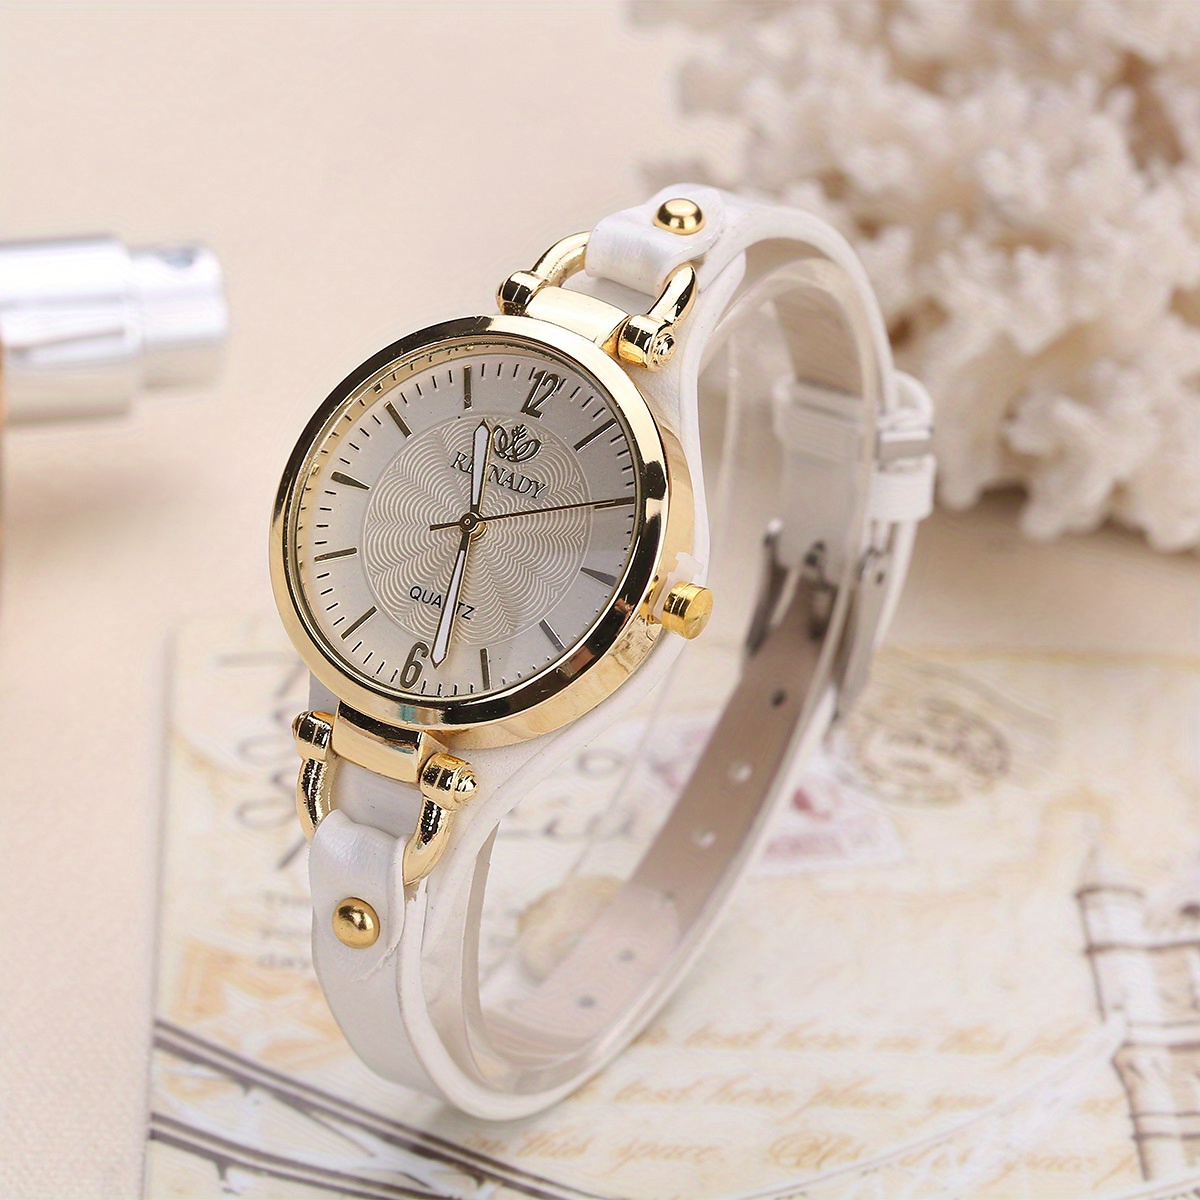 Relojes con correa de piel para un look clásico y MUY atractivo